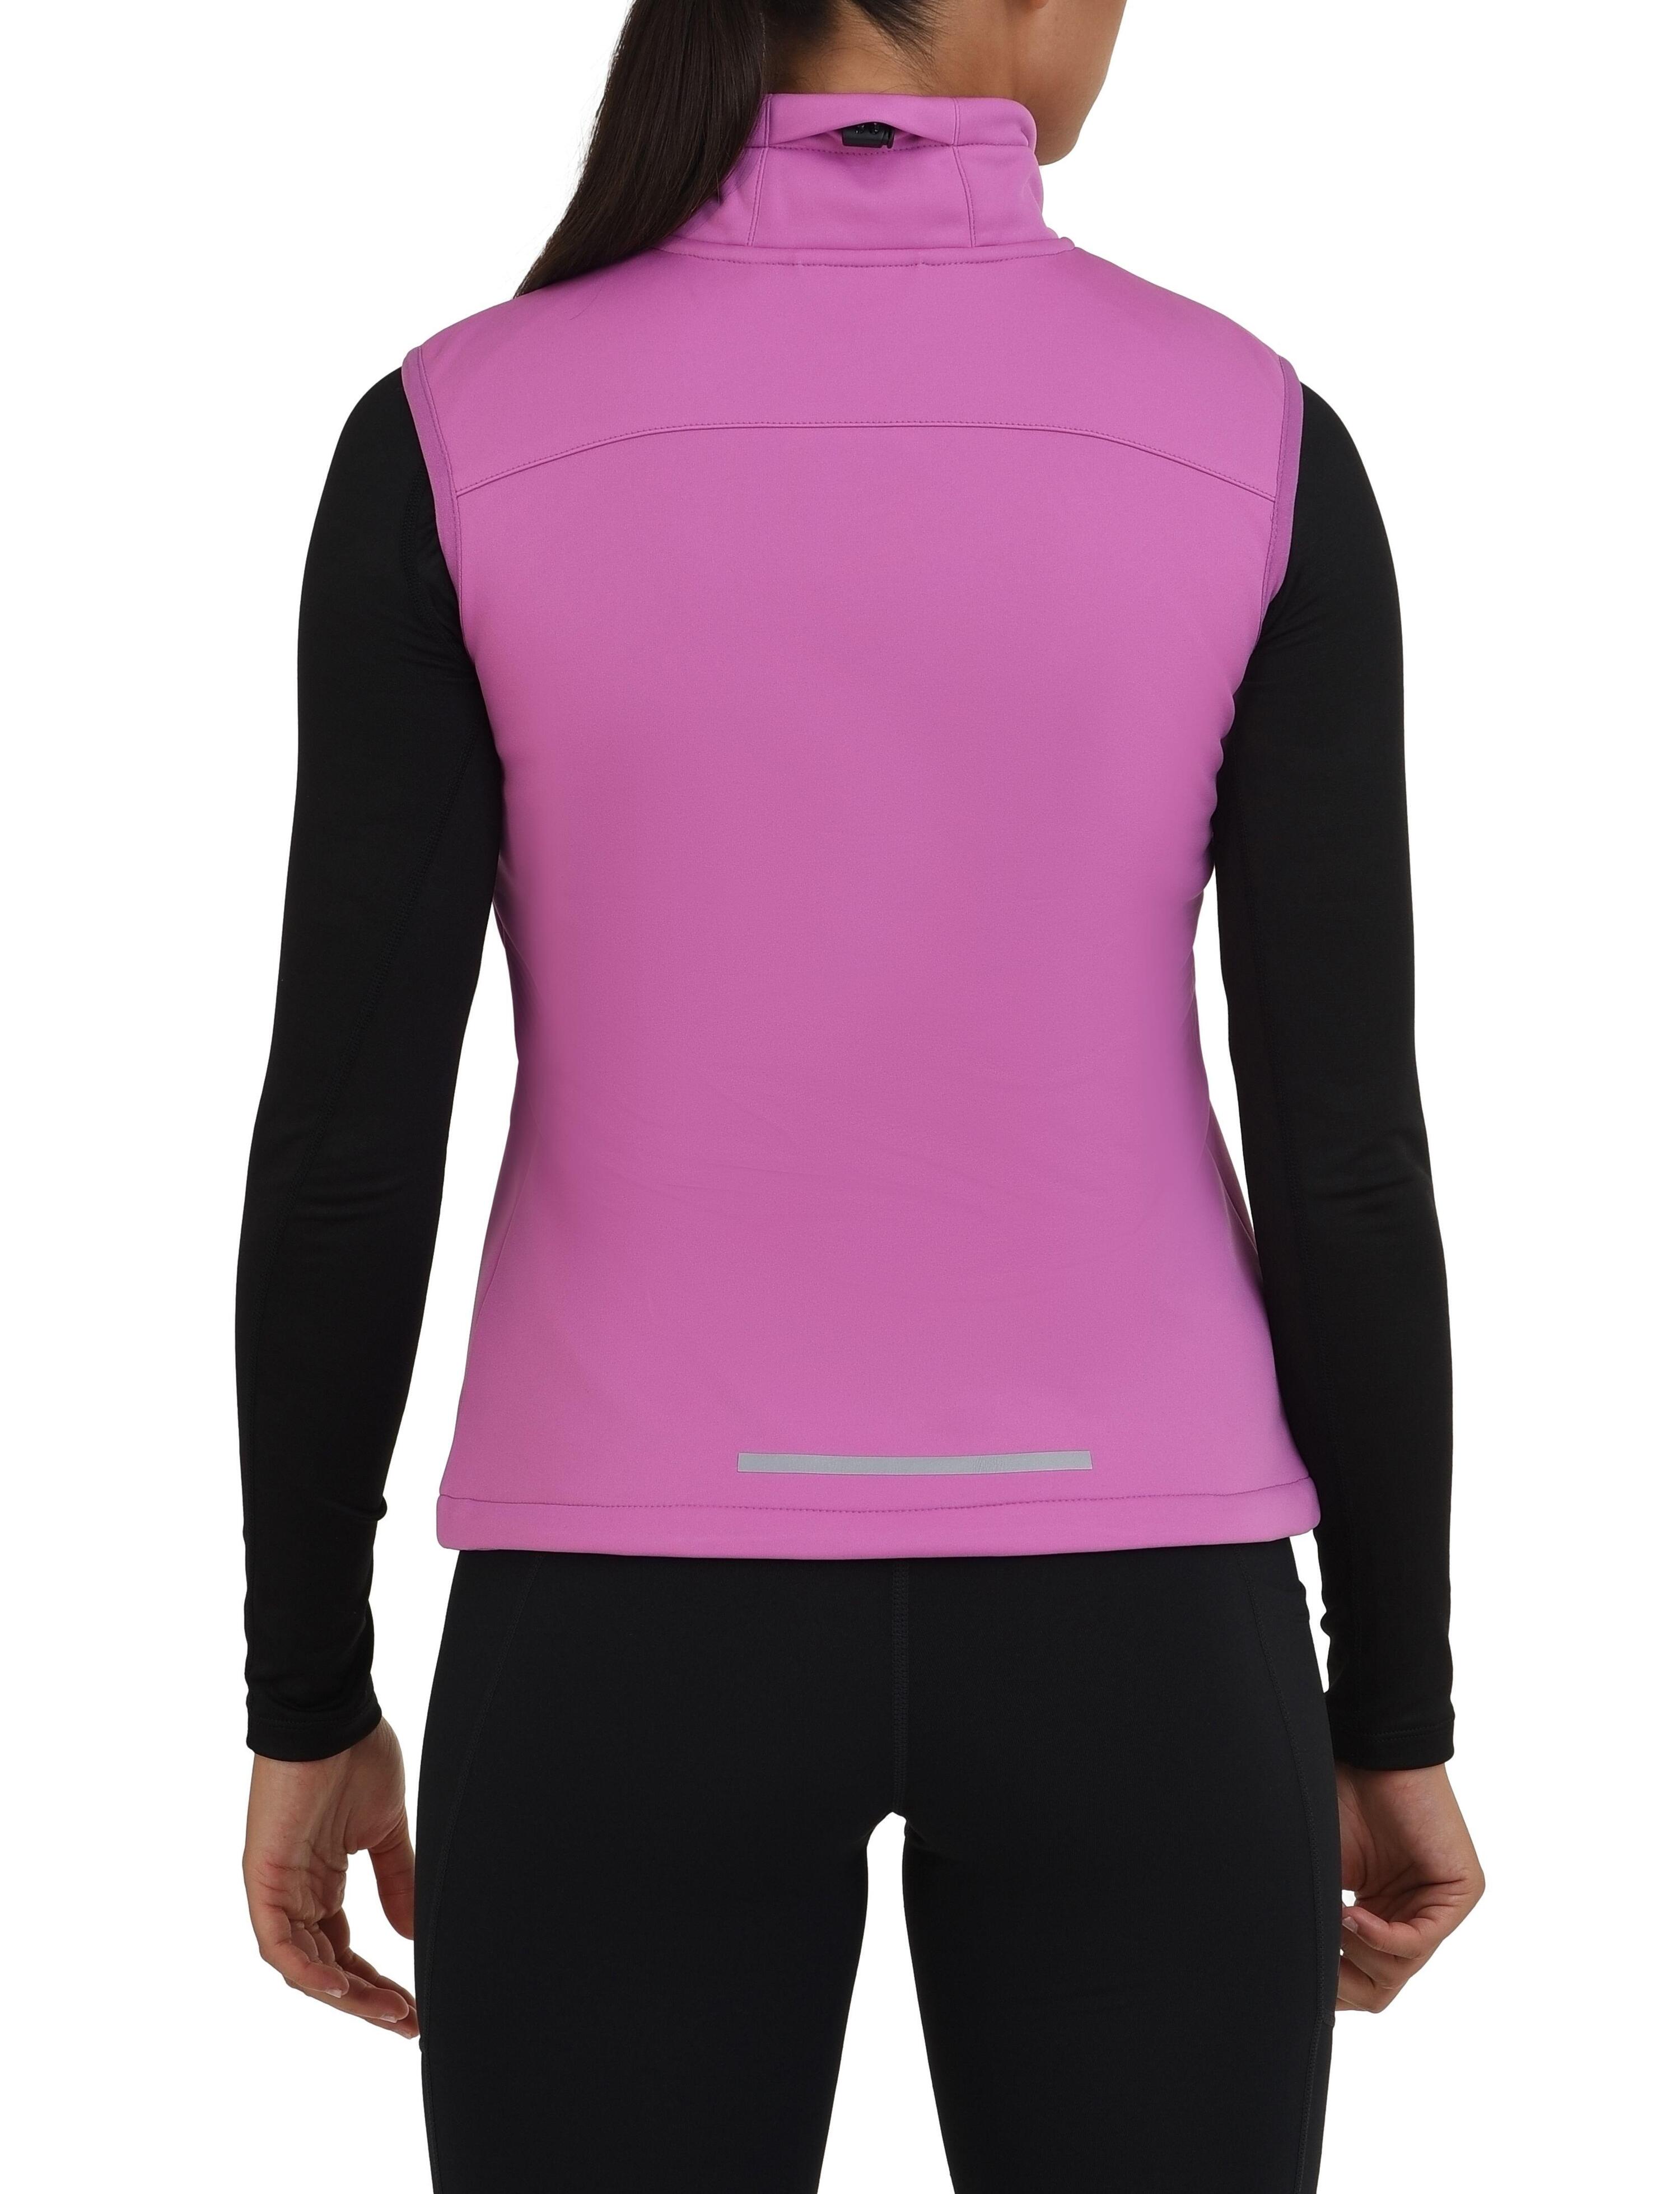 Women's Wind Proof Gilet with Zip Pockets - Spring Crocus (Pink) 3/5